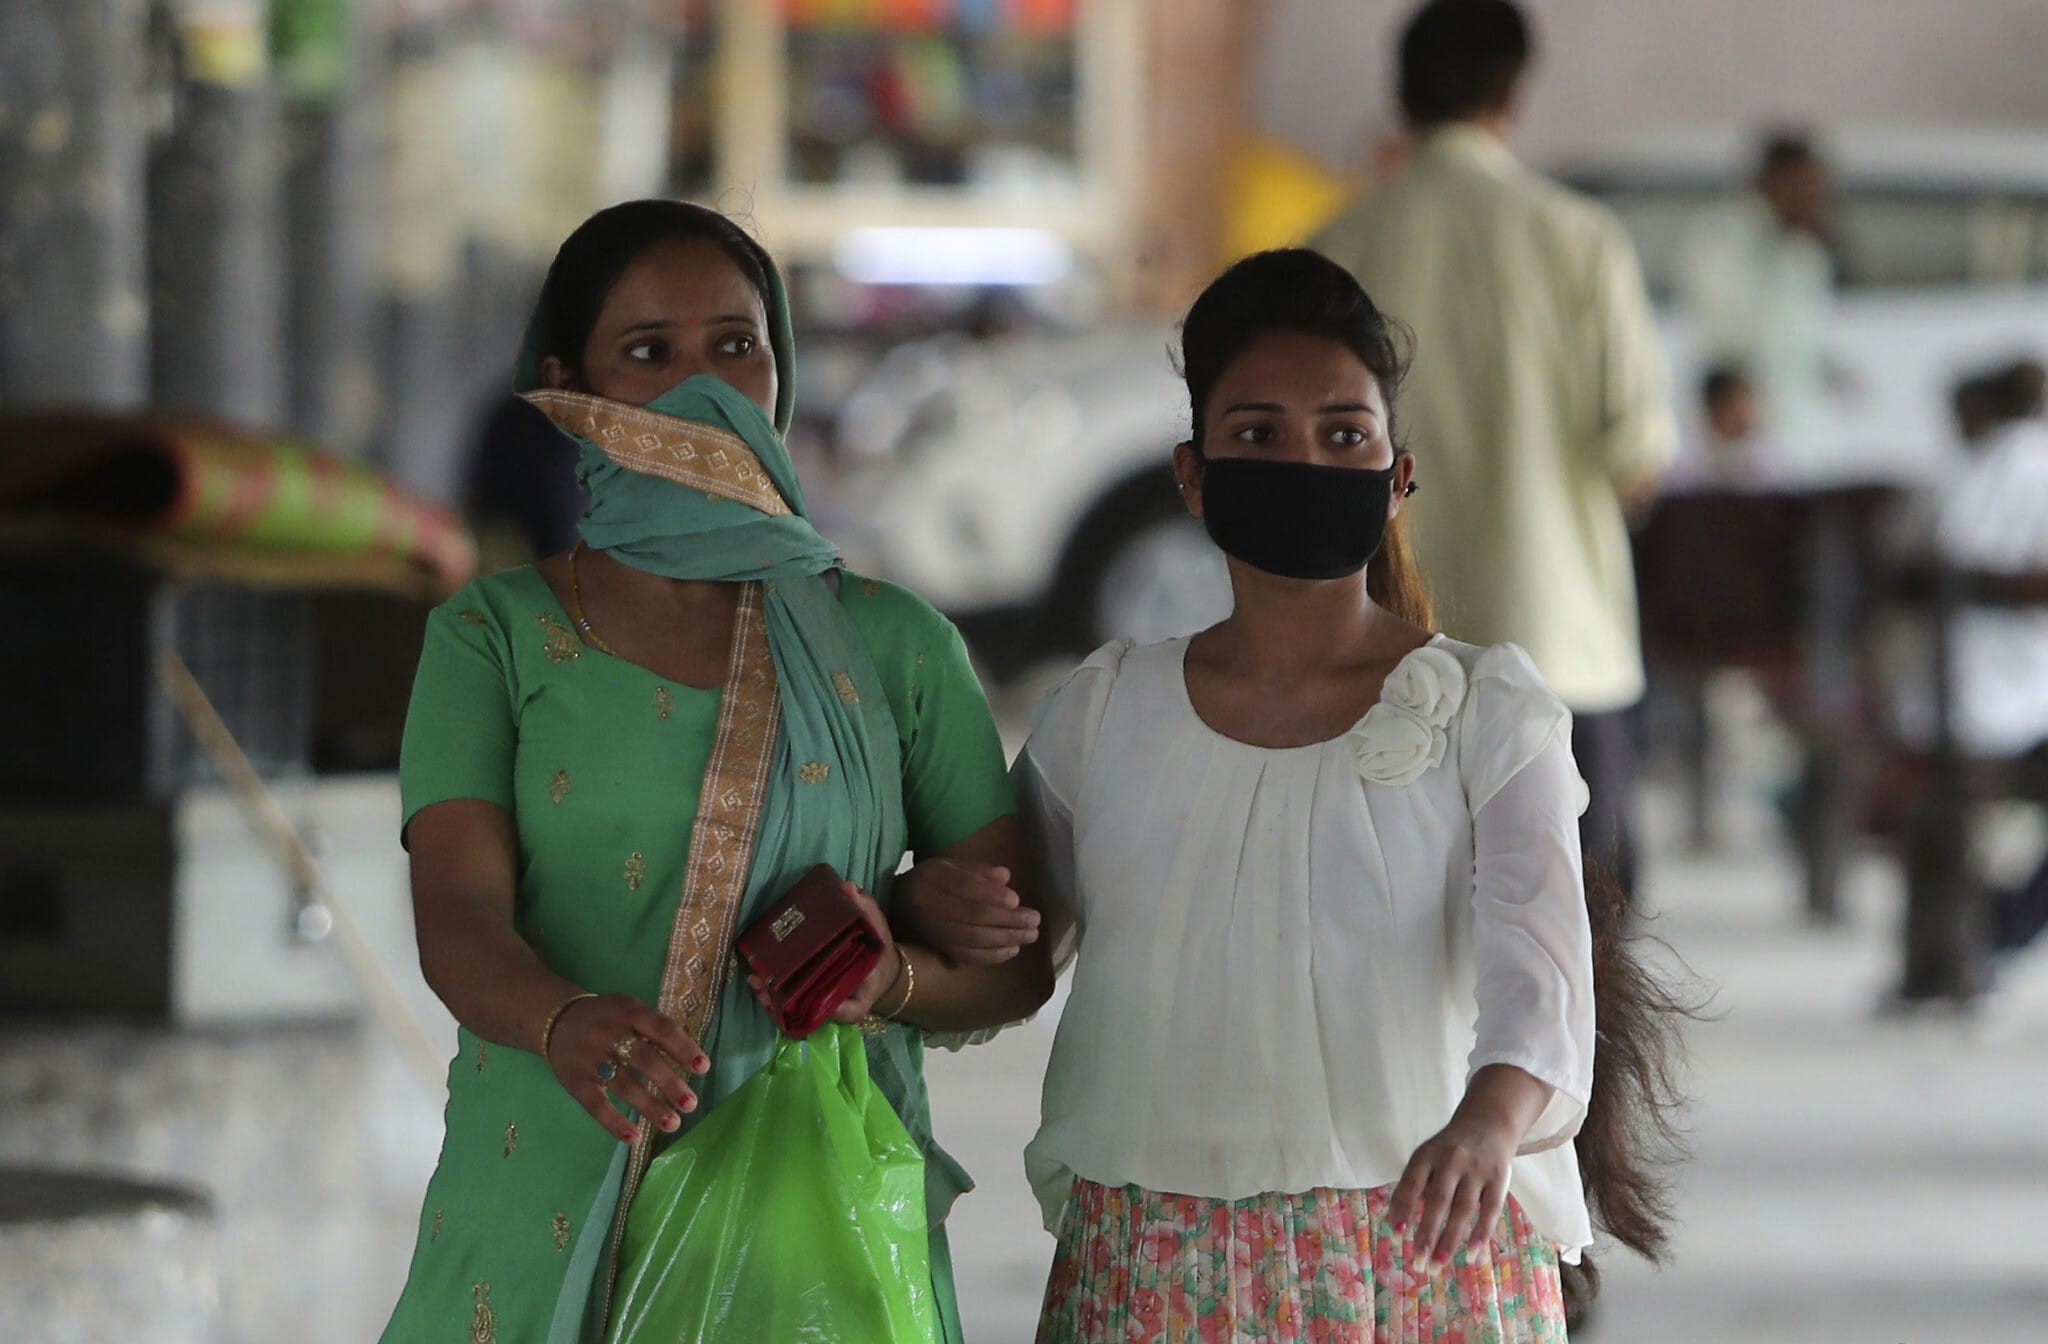 עידן הקורונה בהודו, יולי 2020, אילוסטרציה, למצולמות אין קשר לנאמר בידיעה (צילום: AP Photo/Channi Anand)